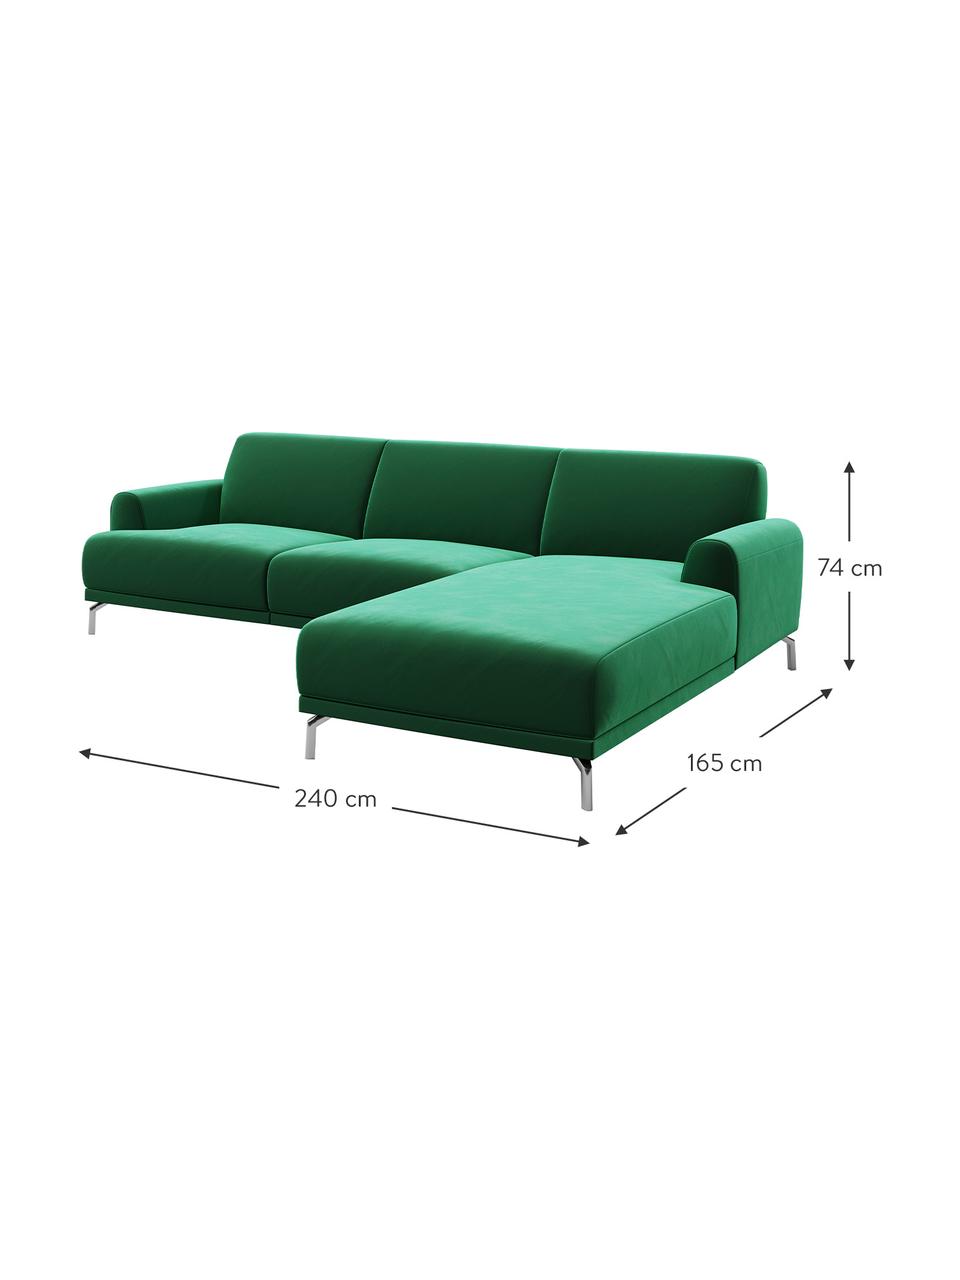 Sofa narożna z aksamitu Puzo, Tapicerka: 100% aksamit poliestrowy,, Nogi: metal lakierowany, Ciemnozielony, S 240 x G 165 cm